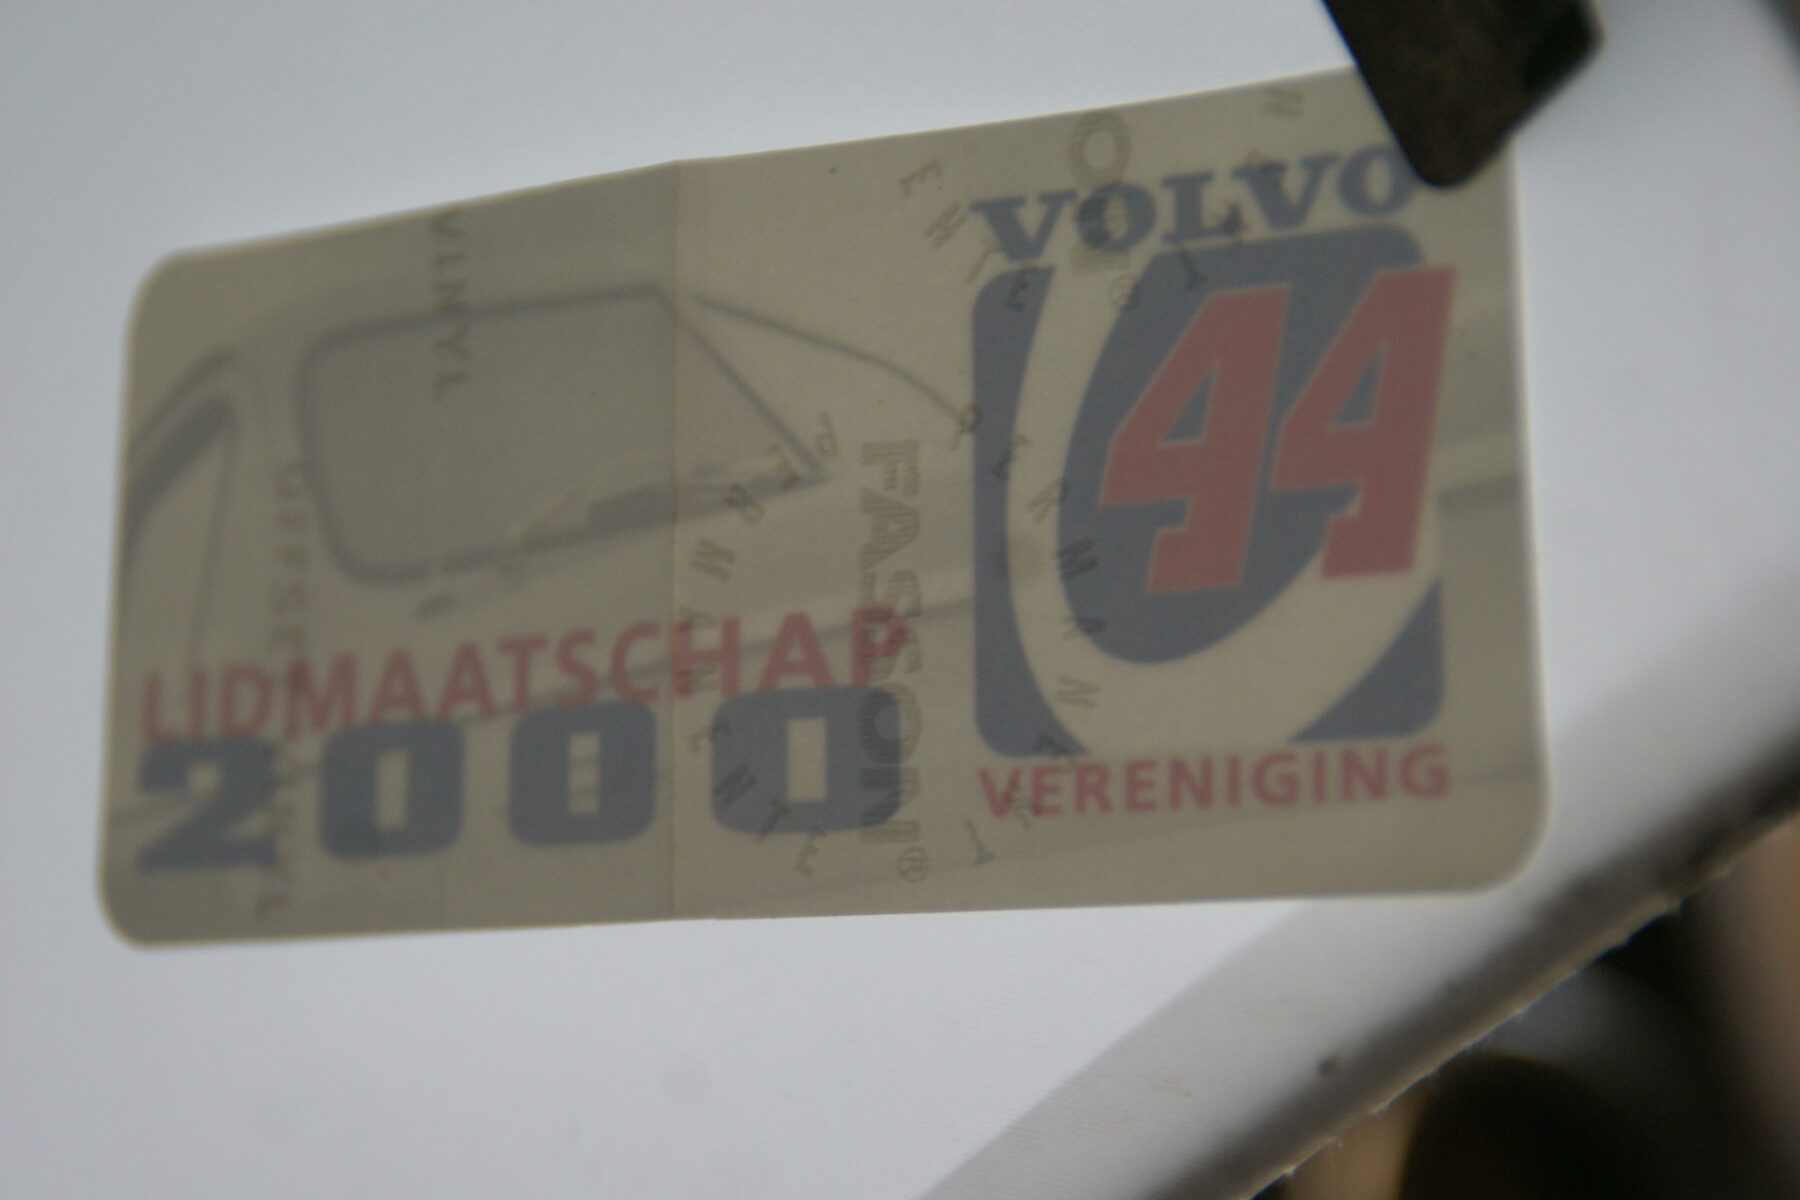 DSC02586 2000 originele sticker Volvo V44 Vereniging NOS-99668bec